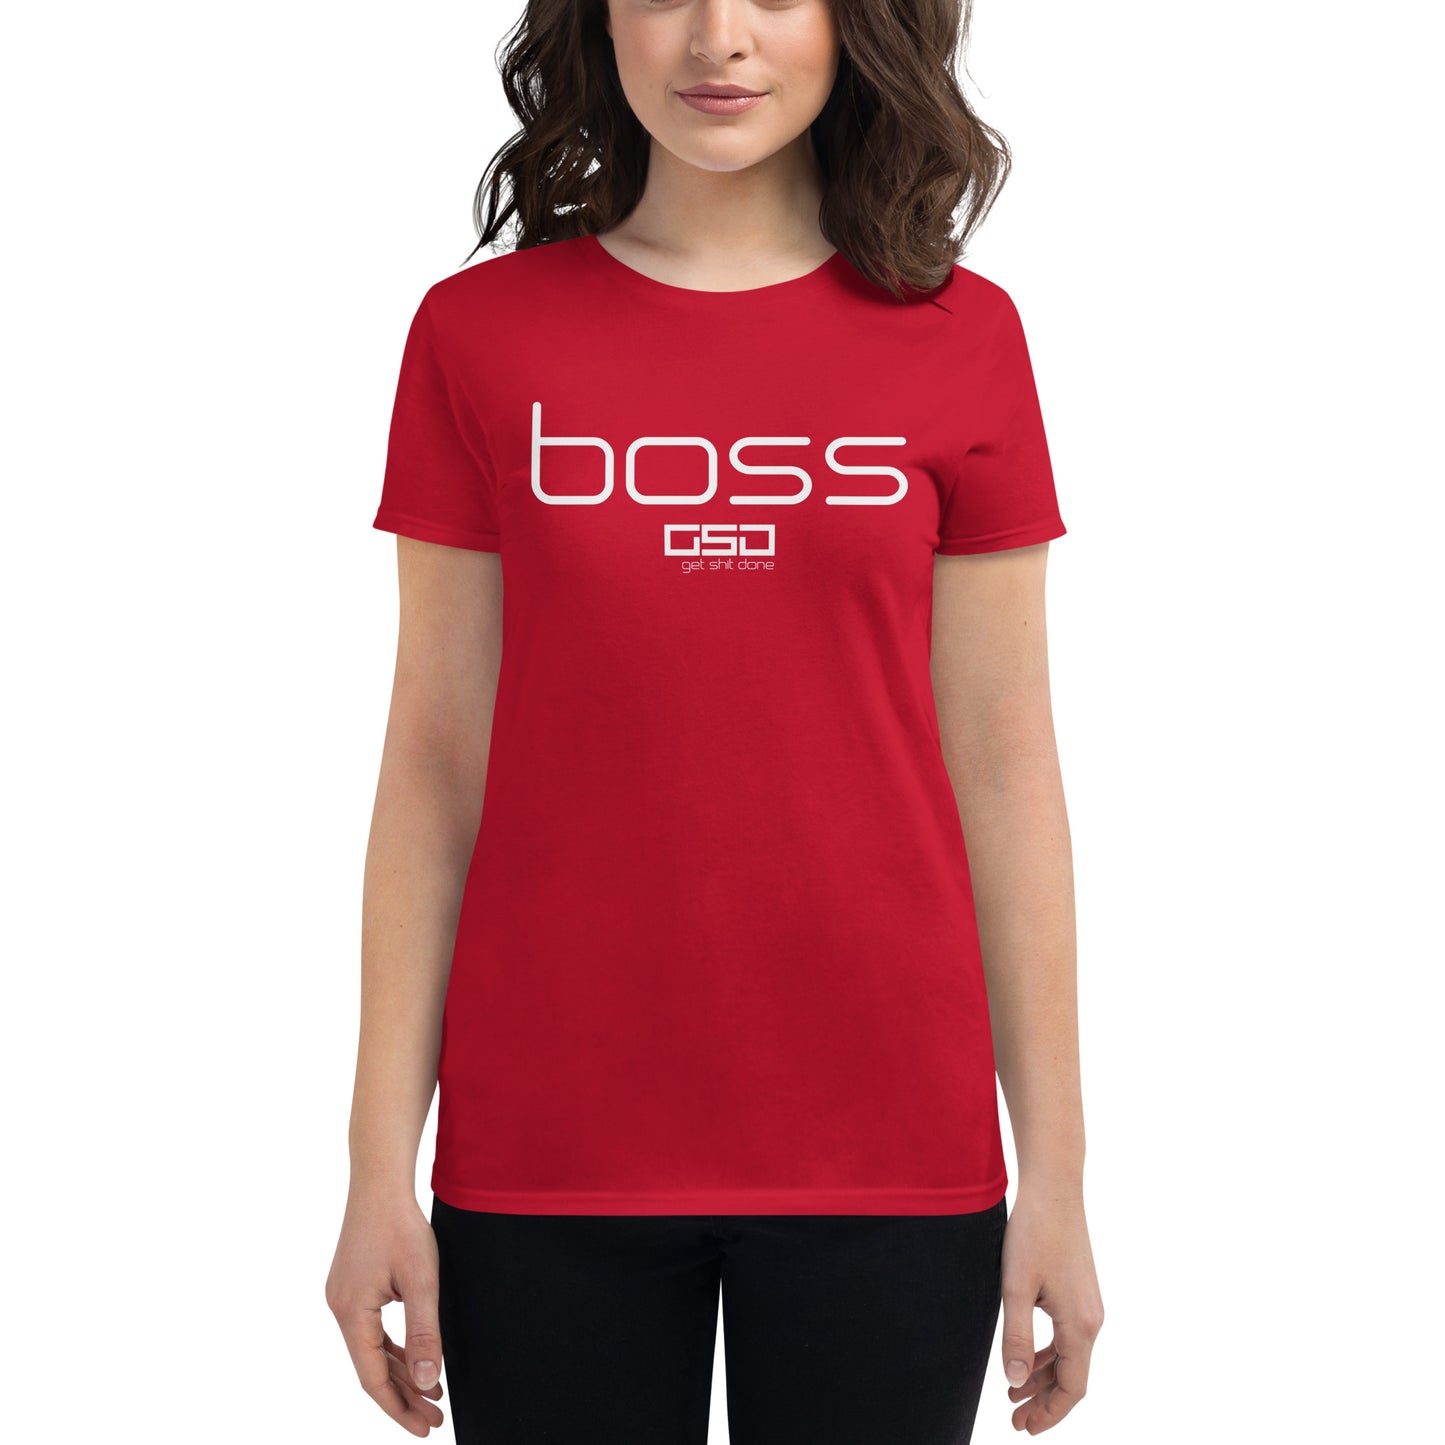 Boss-Women's short sleeve t-shirt